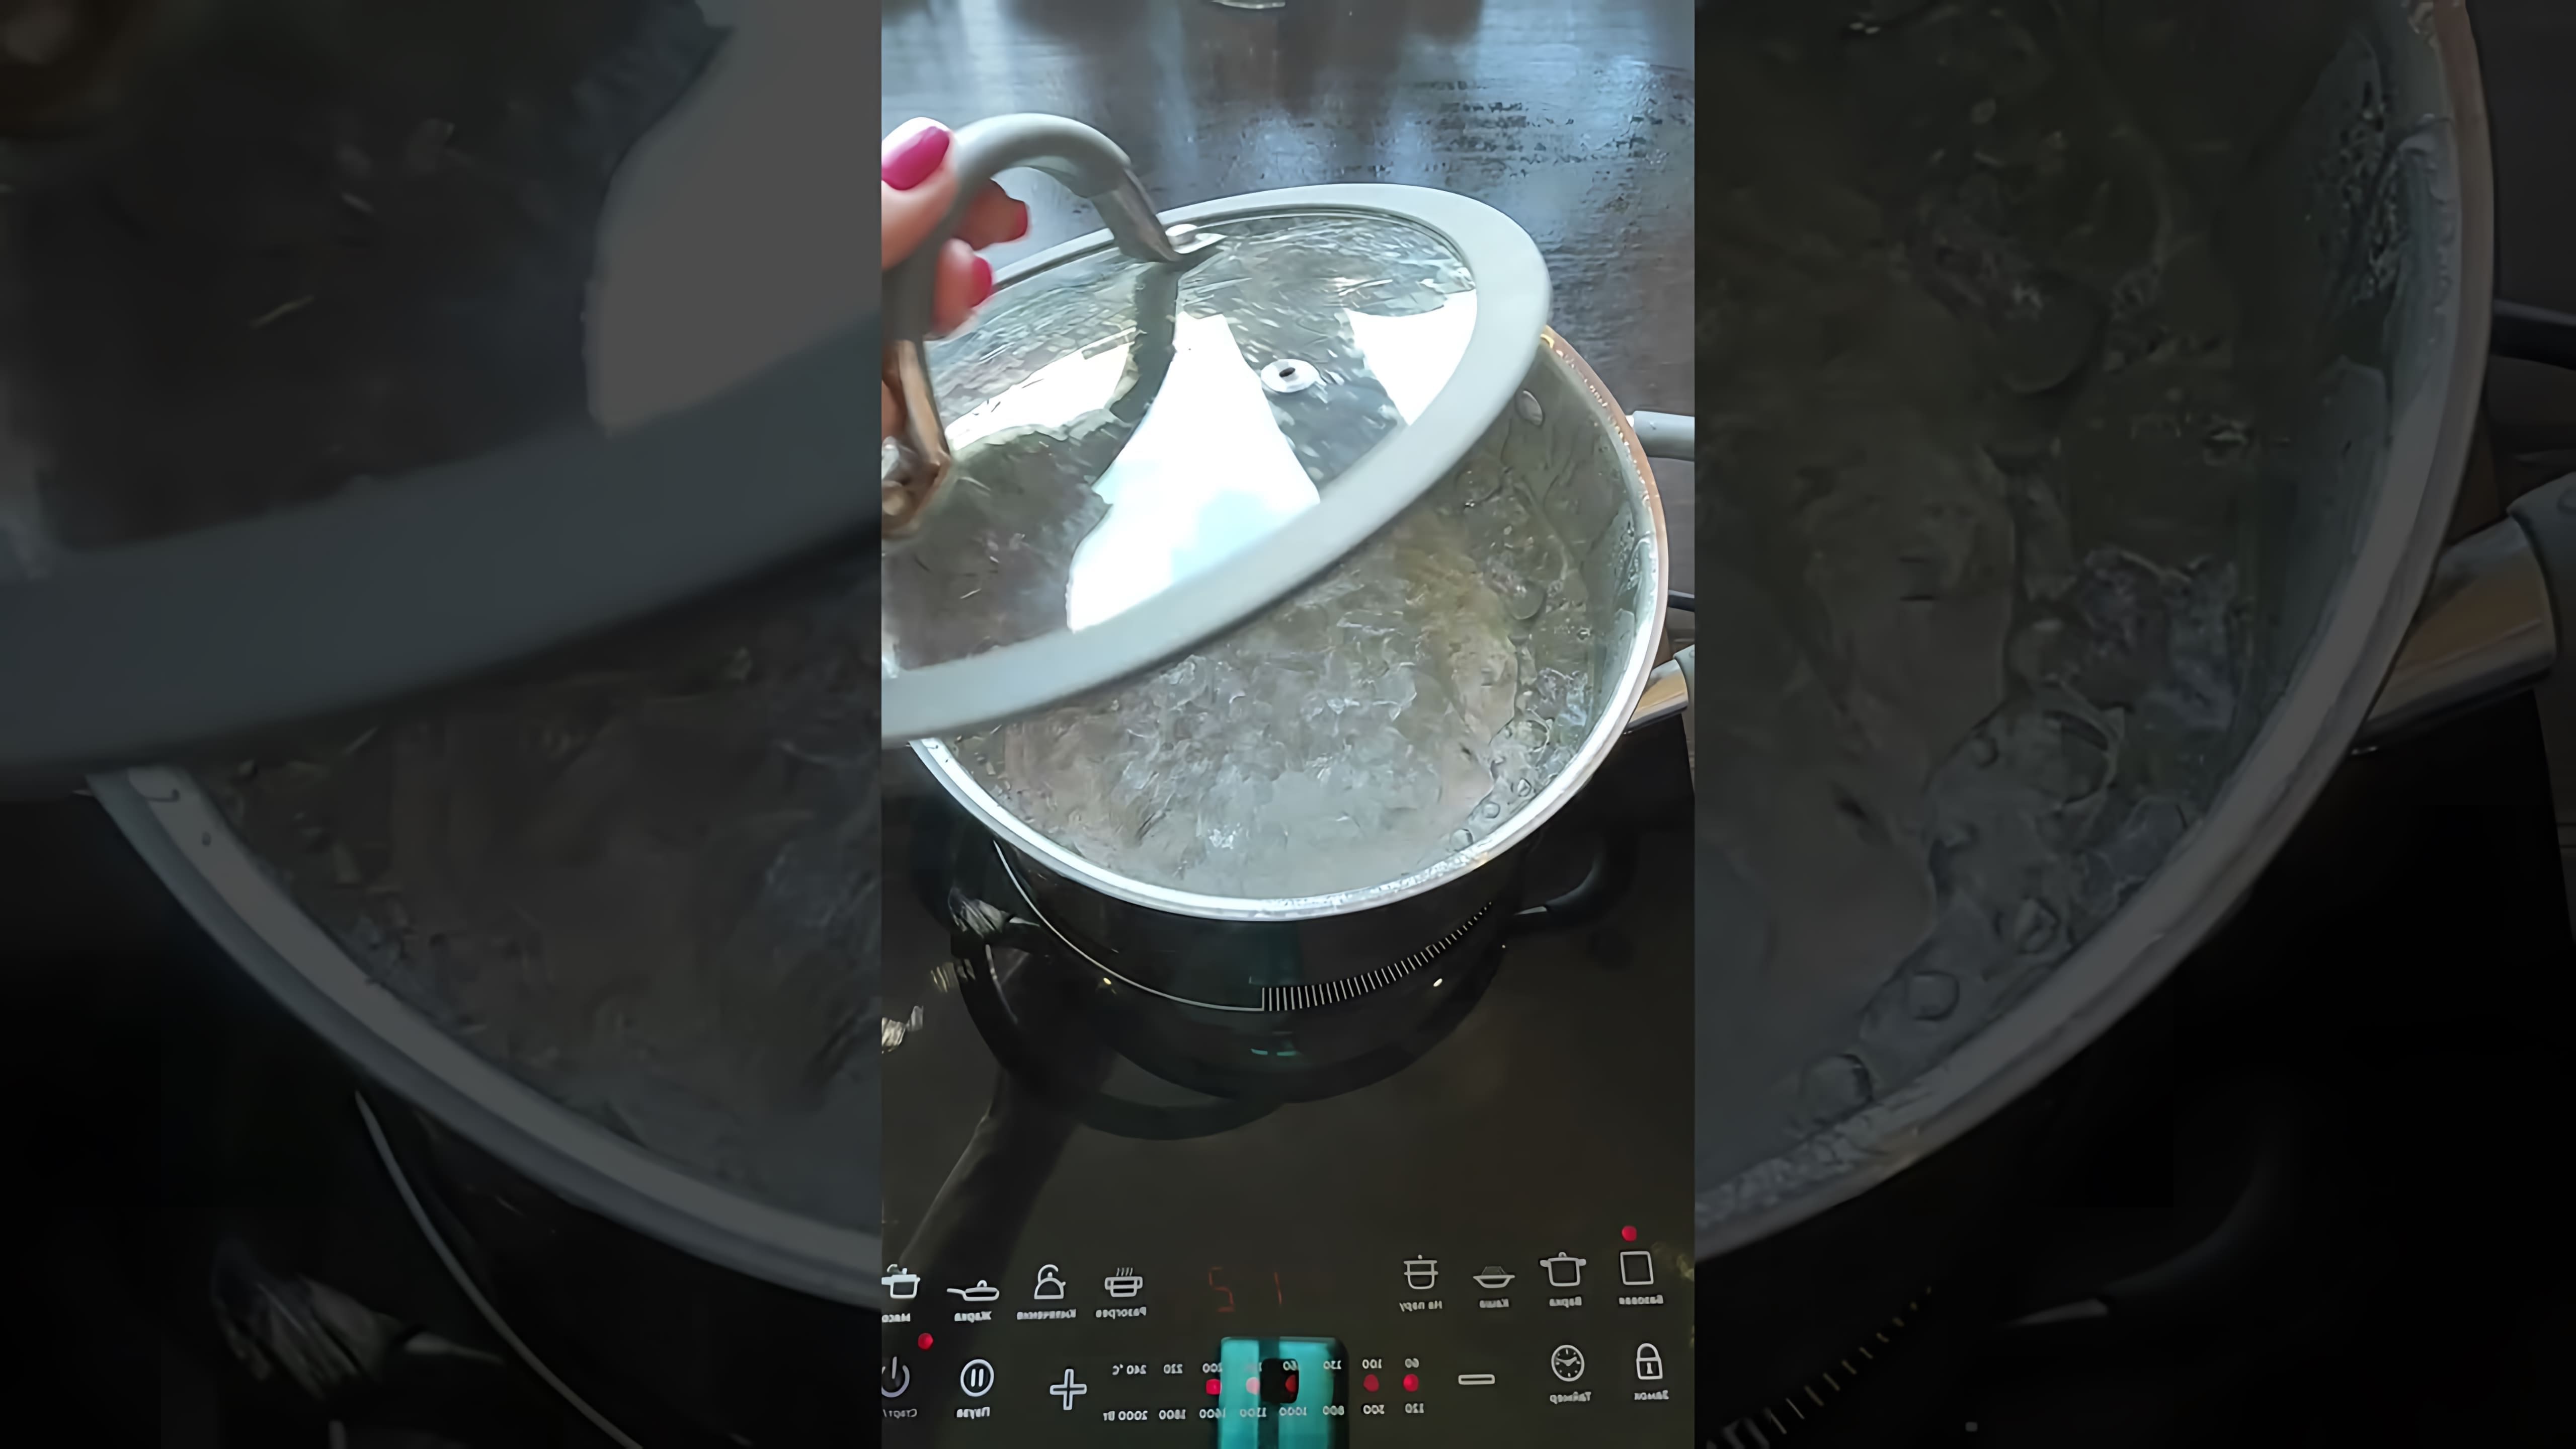 В этом видео демонстрируется рецепт приготовления рисового супа с креветками и сливками